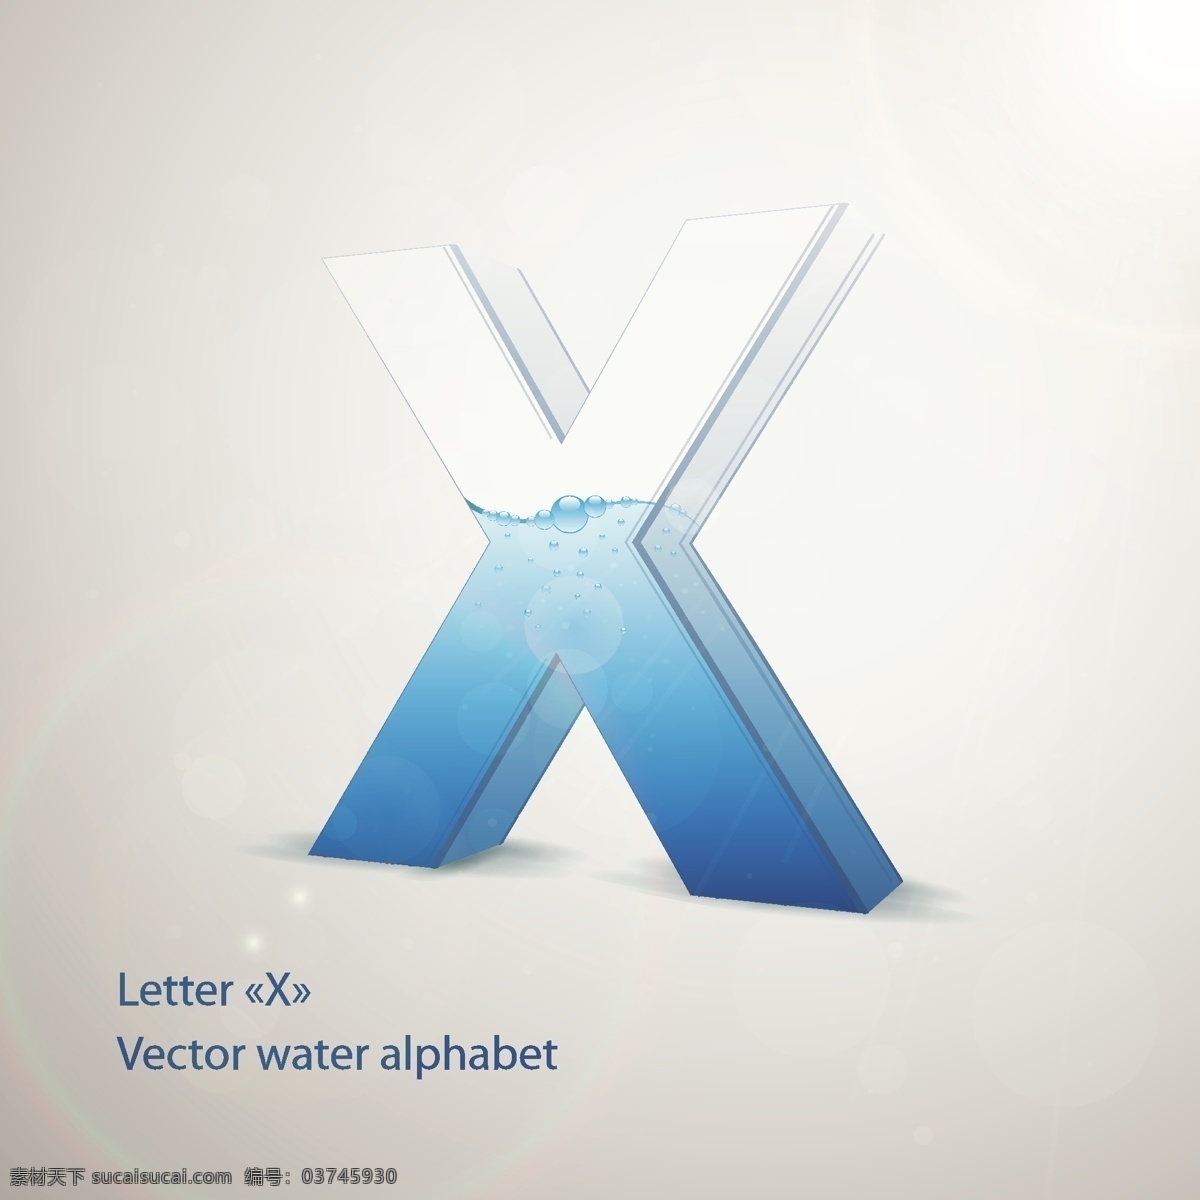 3d立体字x 水晶字 清水 玻璃立体字 3d字 3d英文字母 书画文字 文化艺术 矢量素材 白色